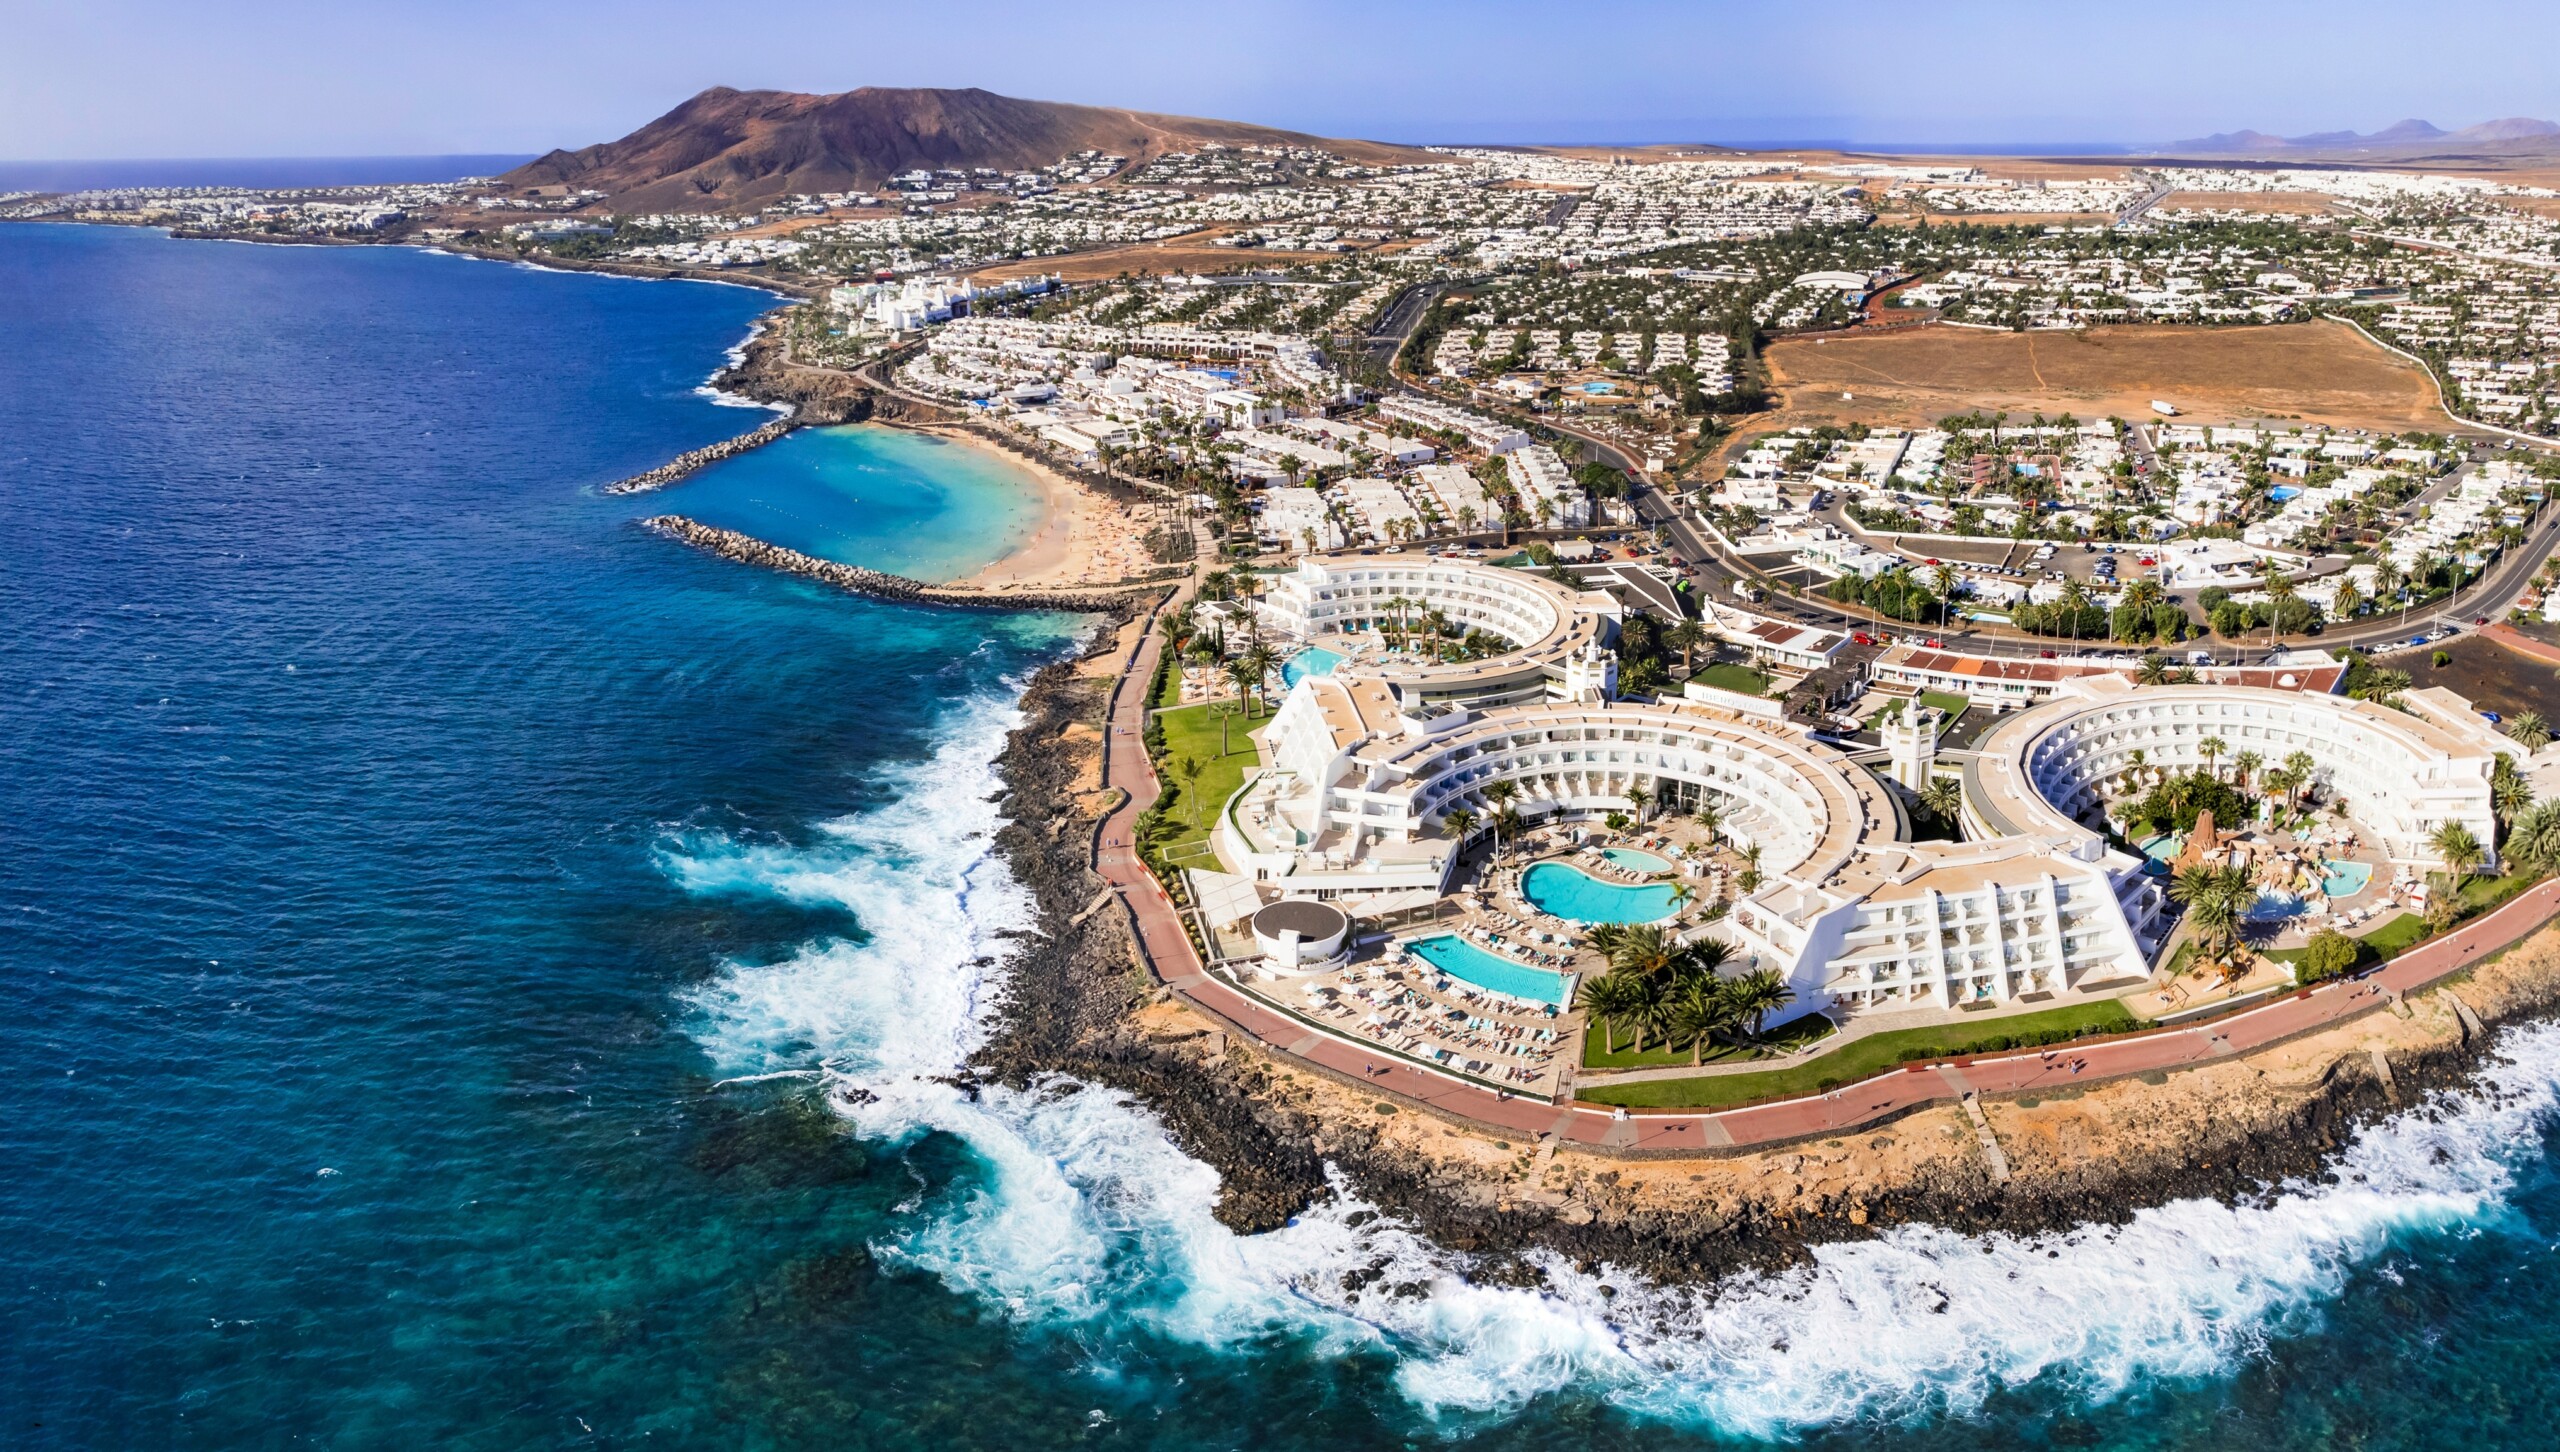 Wyspa Lanzarote, kurort Playa Blanca. panoramiczny widok z drona powietrznego. Wyspy Kanaryjskie w Hiszpanii, licencja: shutterstock/By leoks